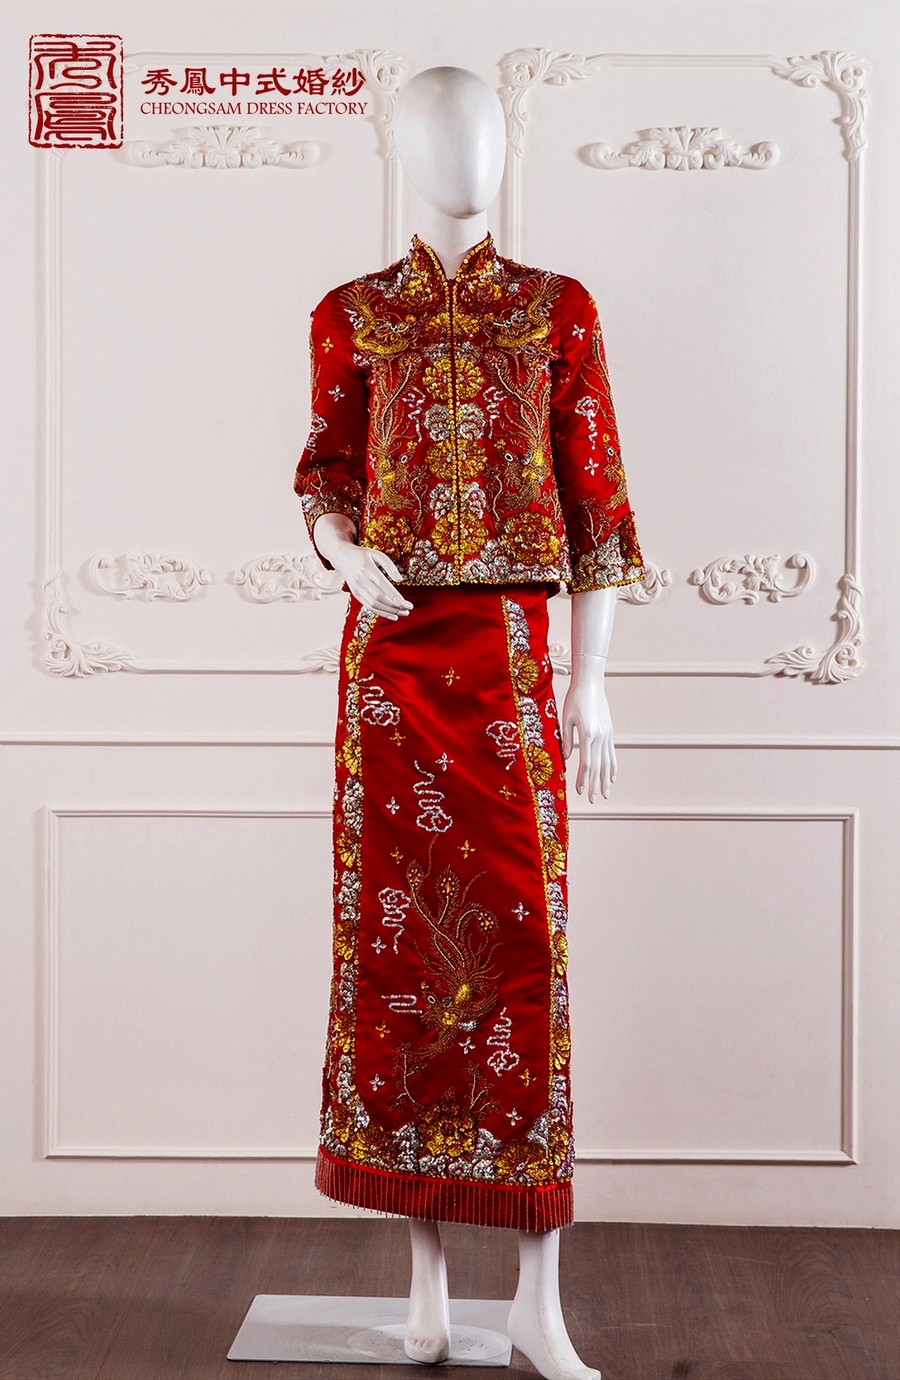 中式禮服 出租,秀禾服款式推薦,龍鳳褂出租,中式婚紗,中式婚紗照,秀禾服